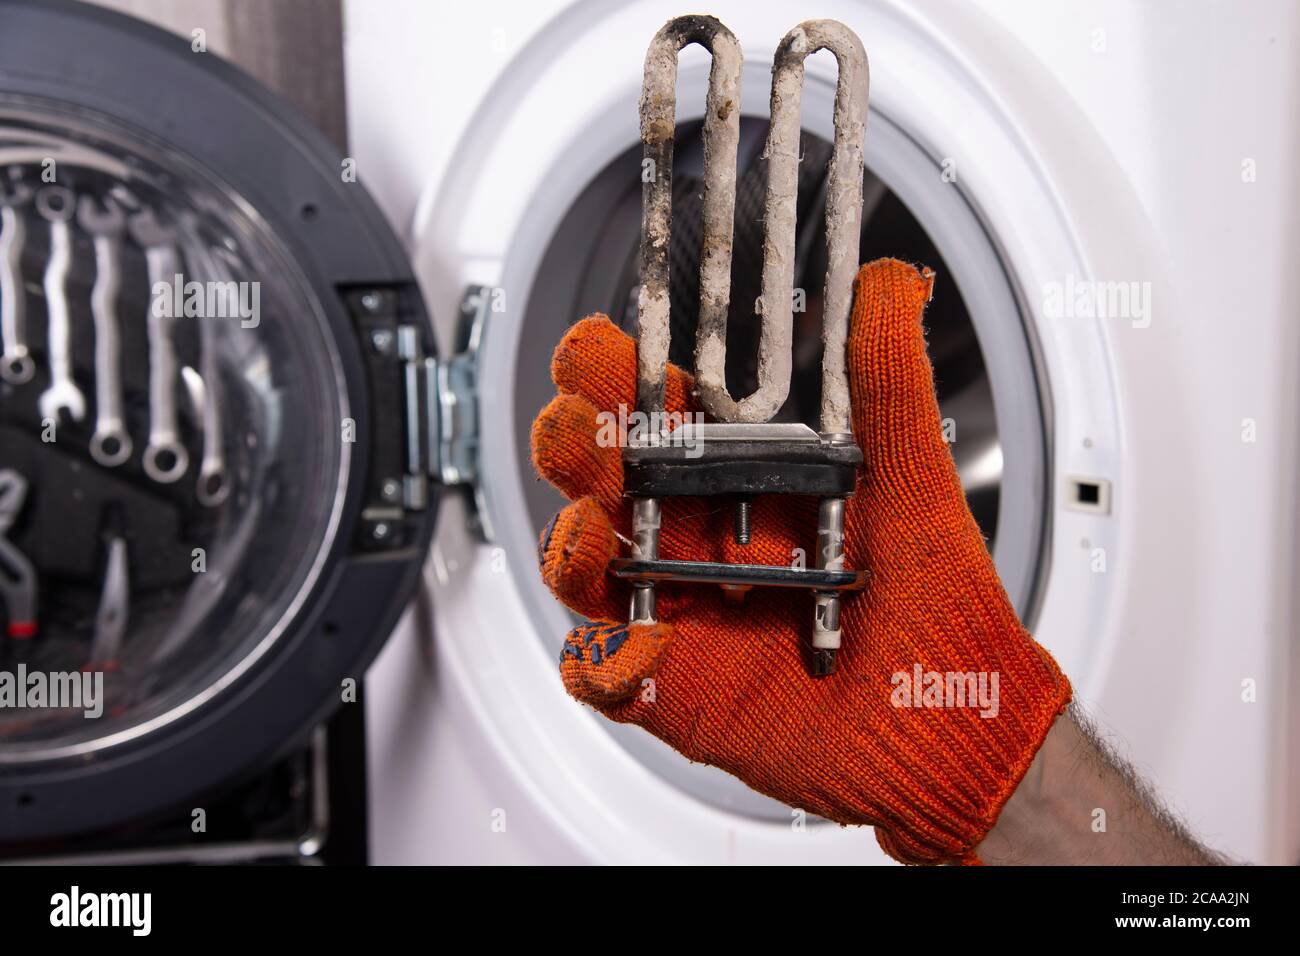 Réparation de machines à laver. Main d'un réparateur avec un chauffage électrique turbulent recouvert d'un revêtement d'eau dure. Remplacement du chauffage électrique Banque D'Images